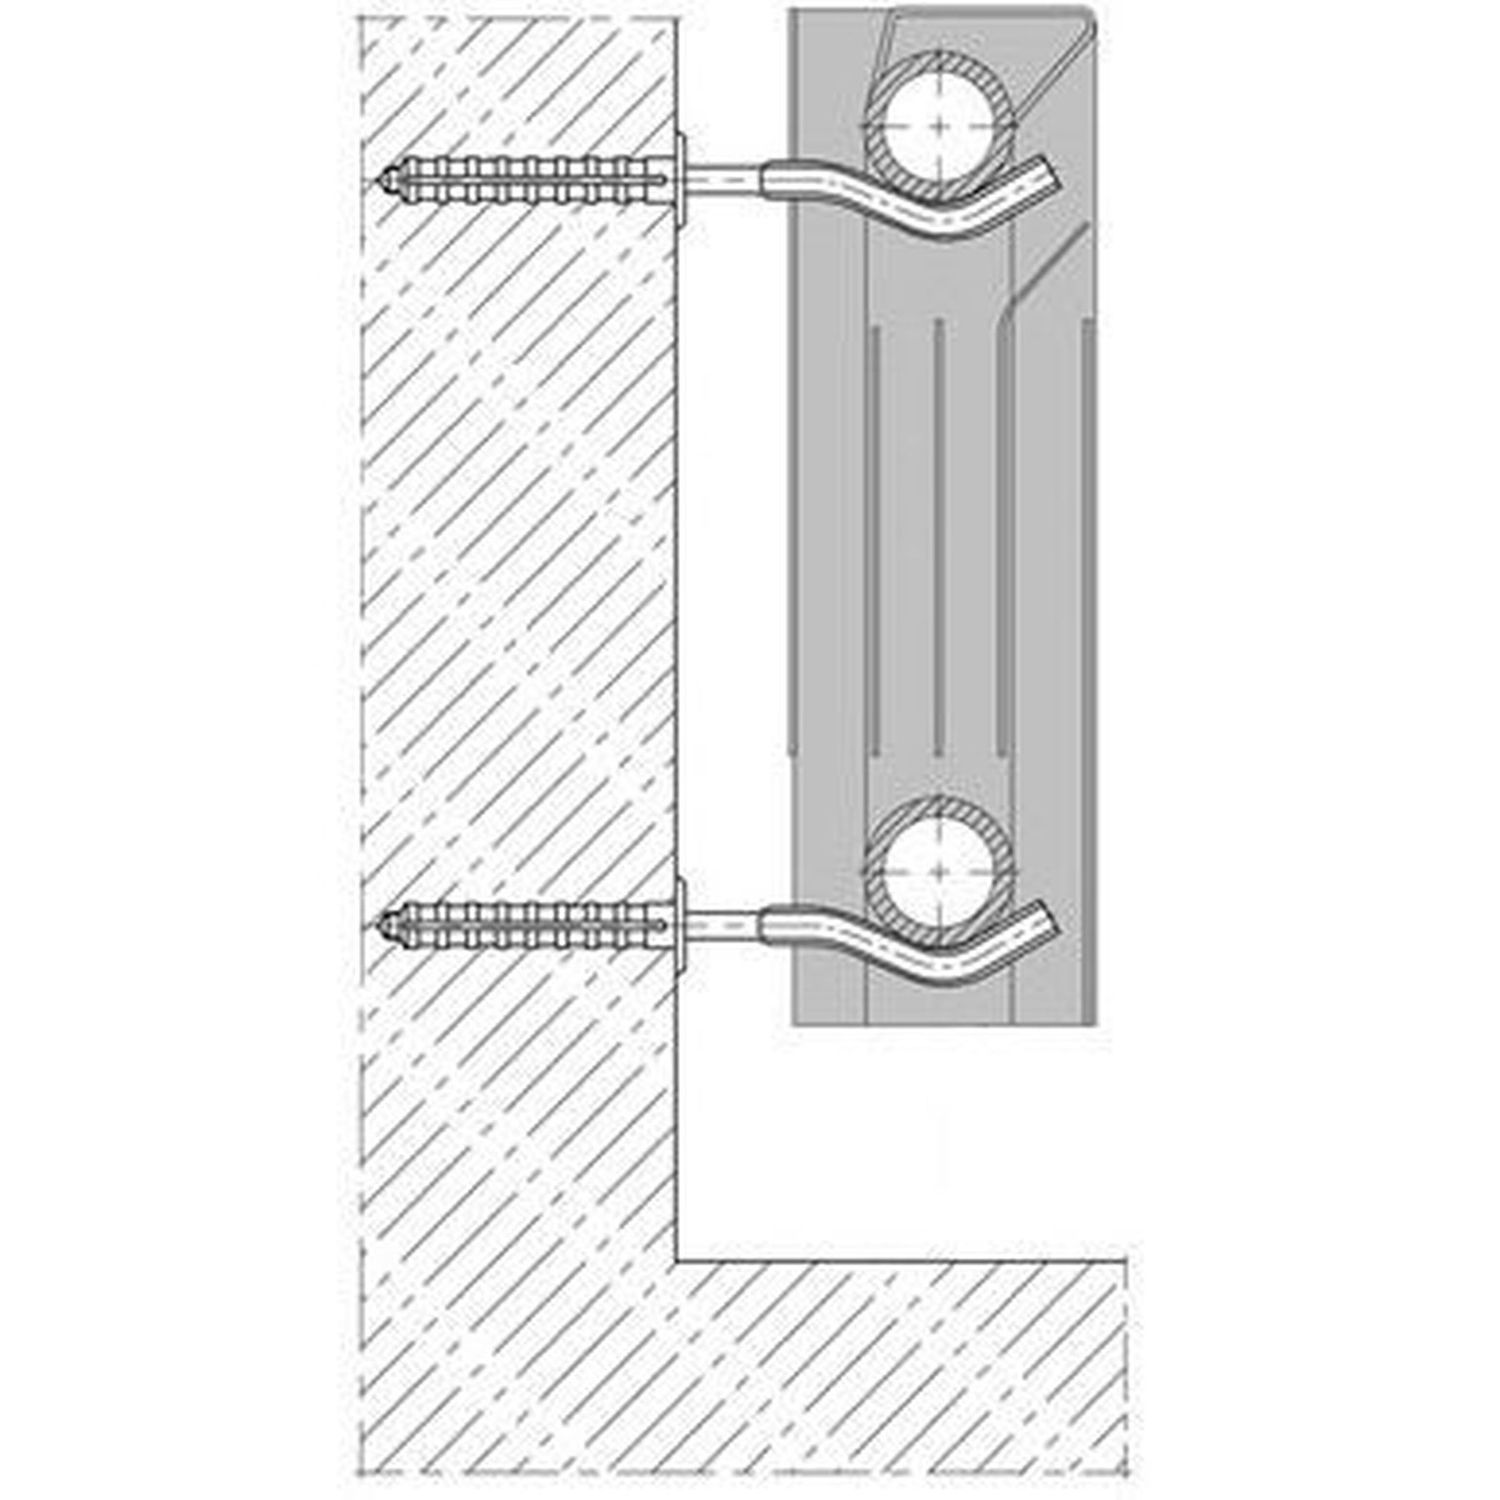 Кронштейн секционного радиатора CRISTAL NS-1011 штырьковый оцинкованный с дюбелем ф9х170мм (кратно 2